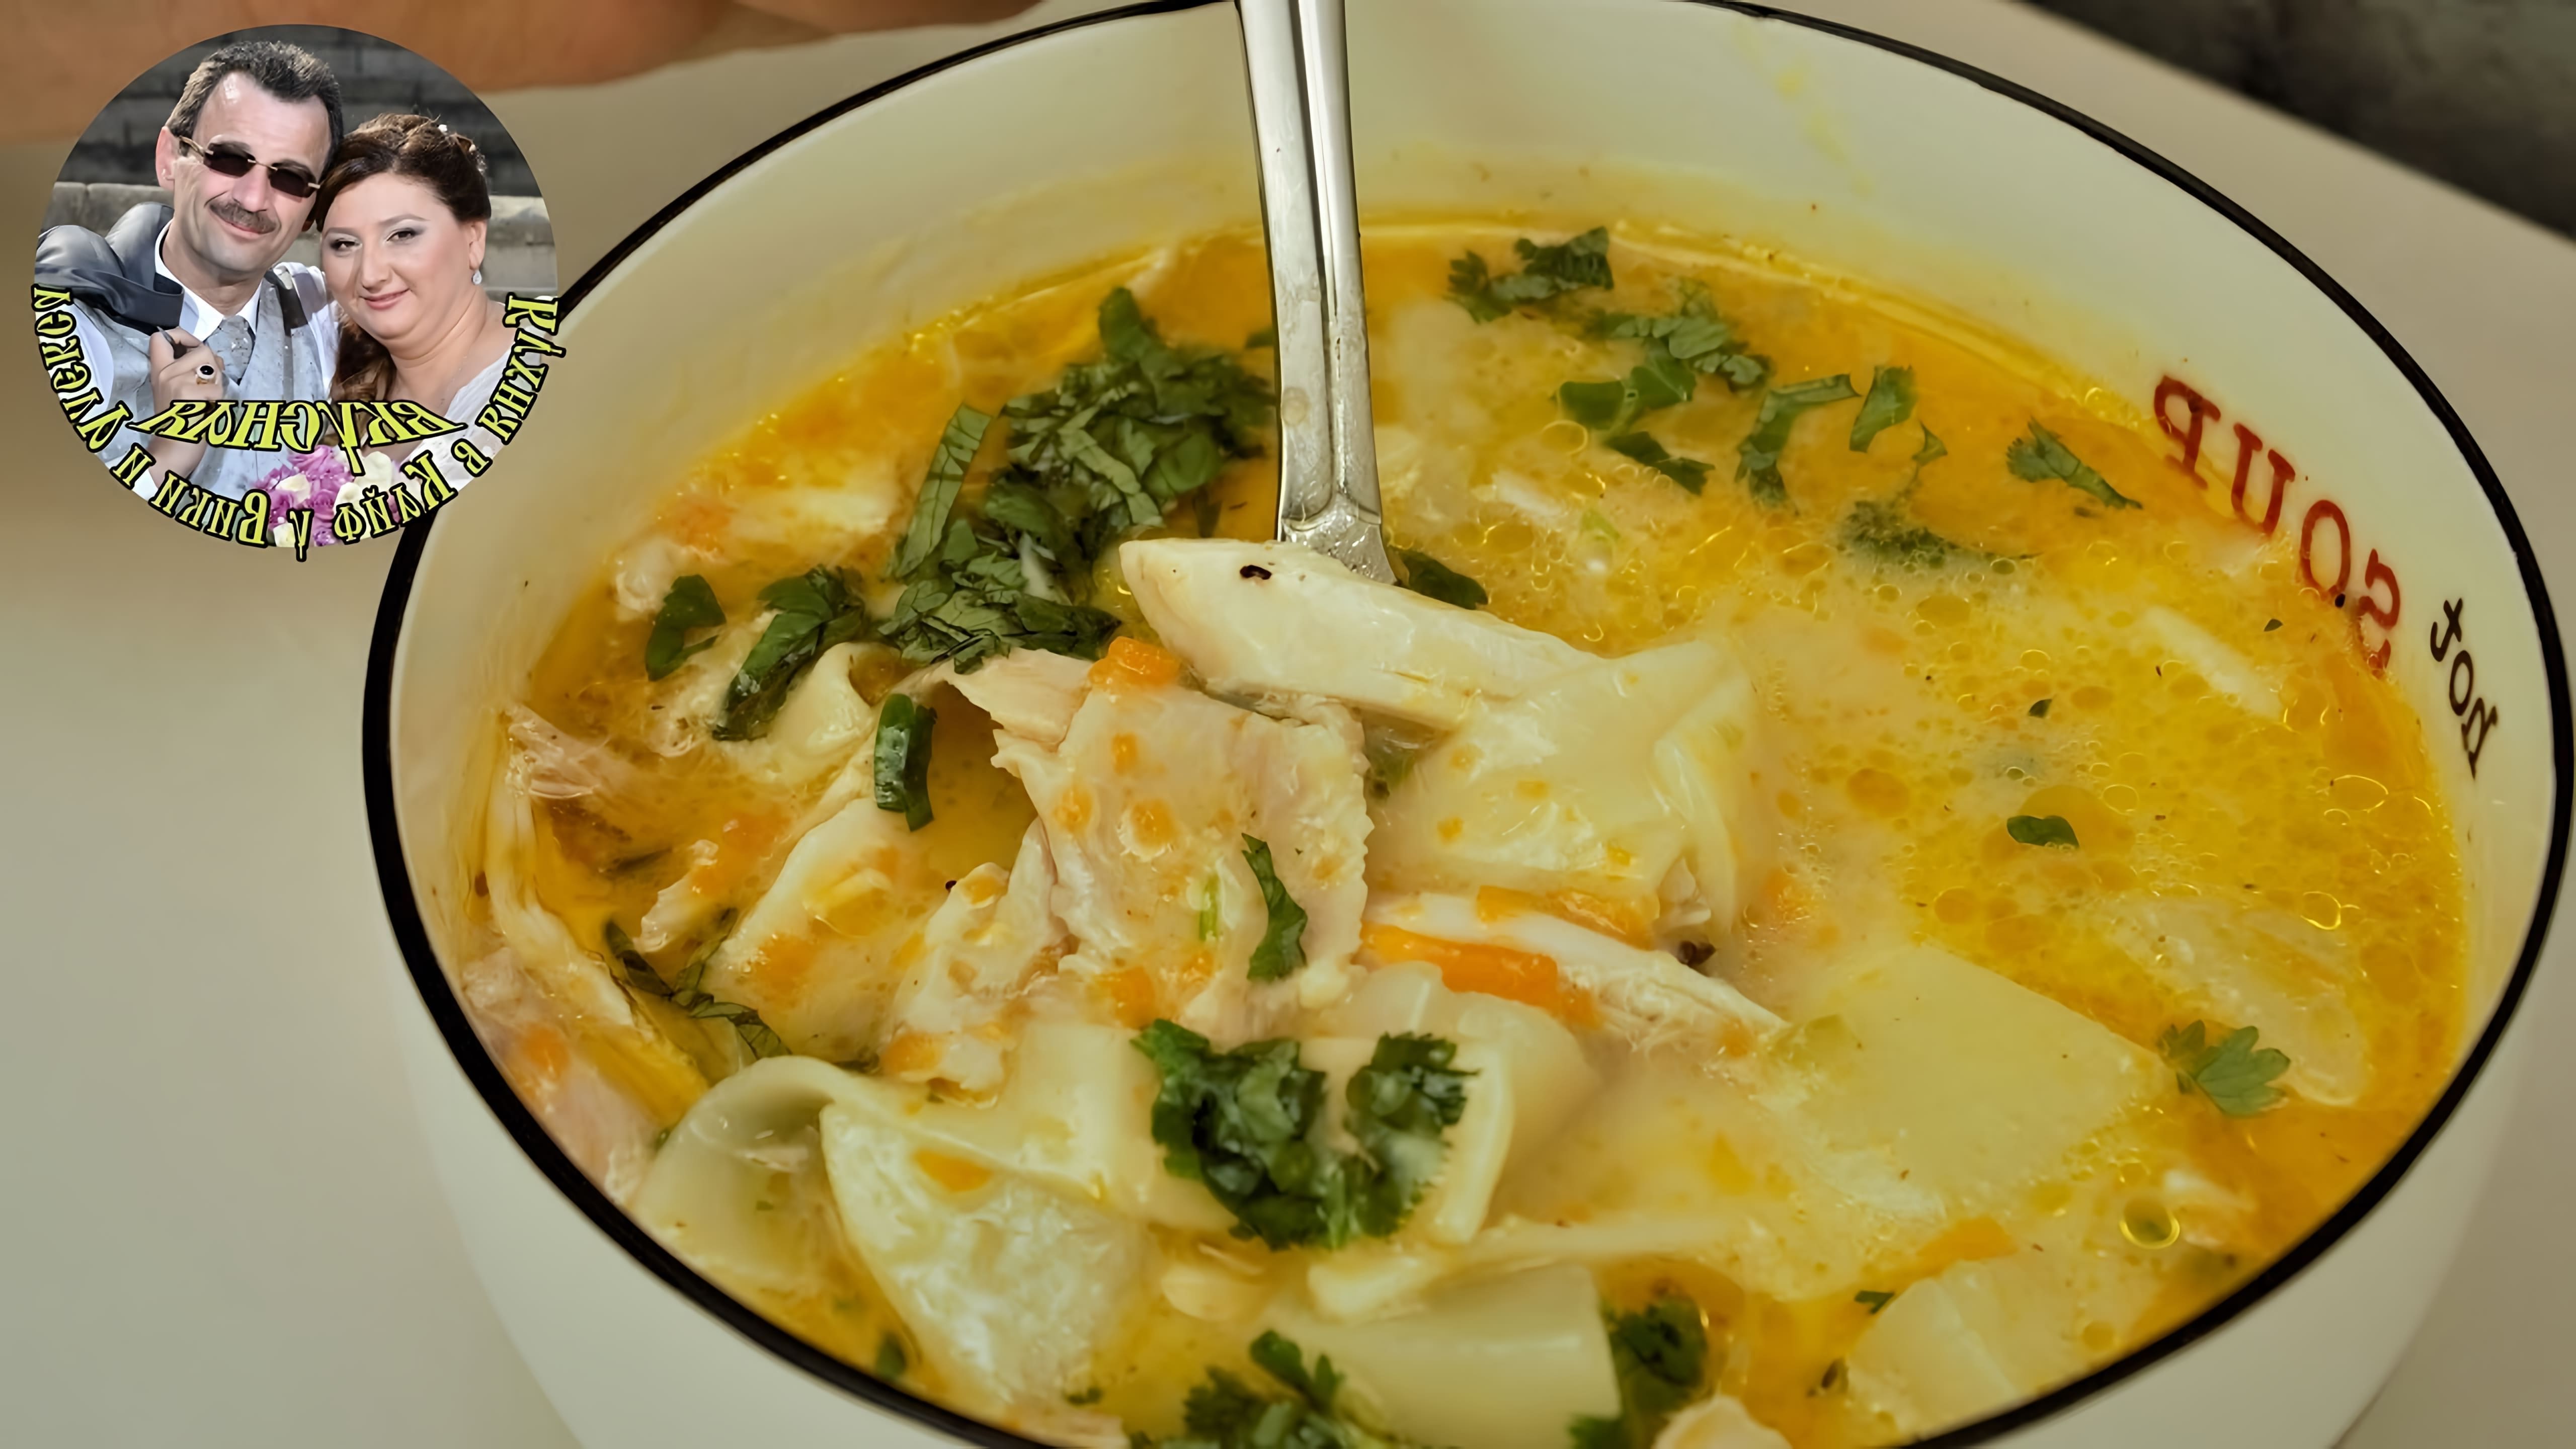 В этом видео демонстрируется процесс приготовления пилешка супа, или куриного супа по-болгарски